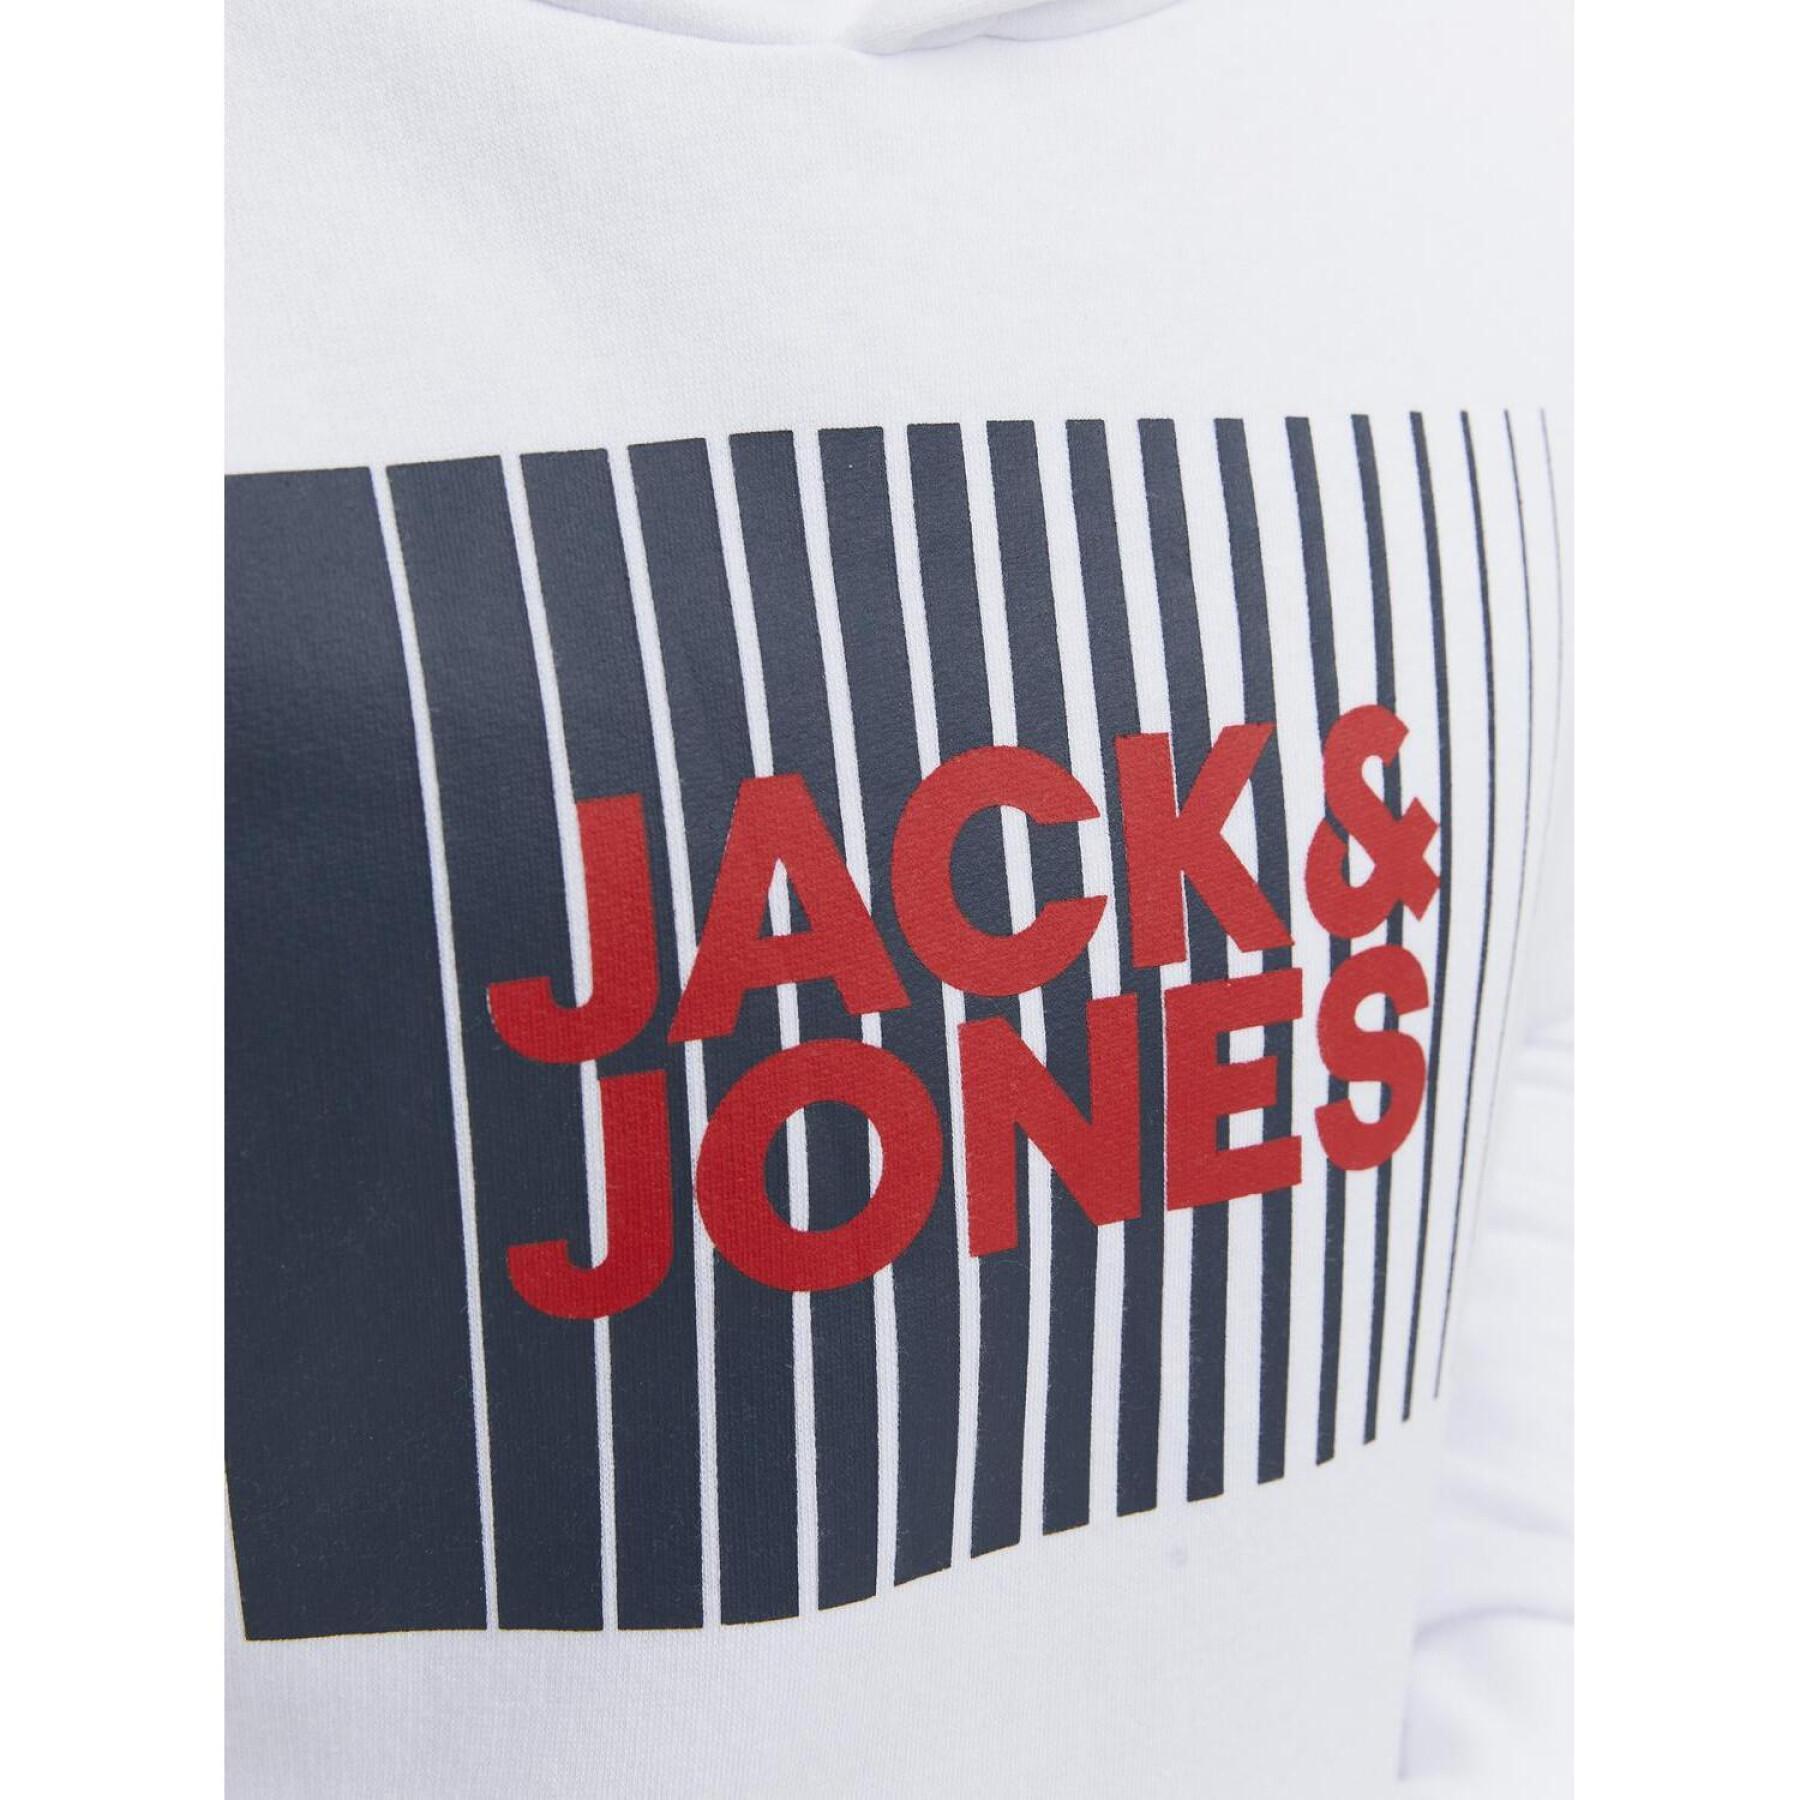 Junior Sweatshirt Jack & Jones Corp Logo Play